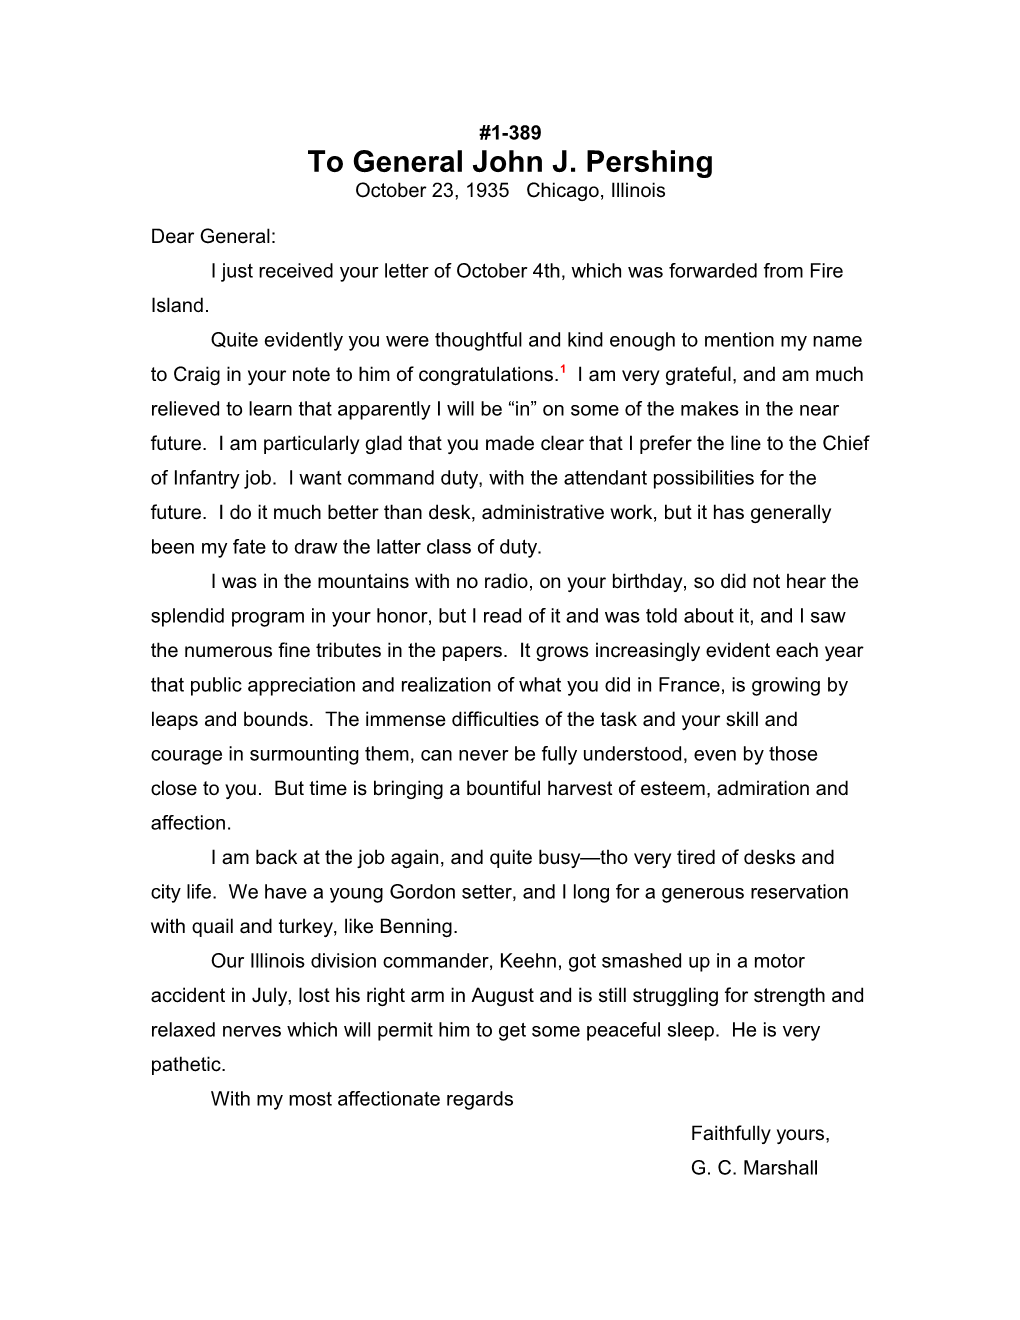 To General John J. Pershing s1